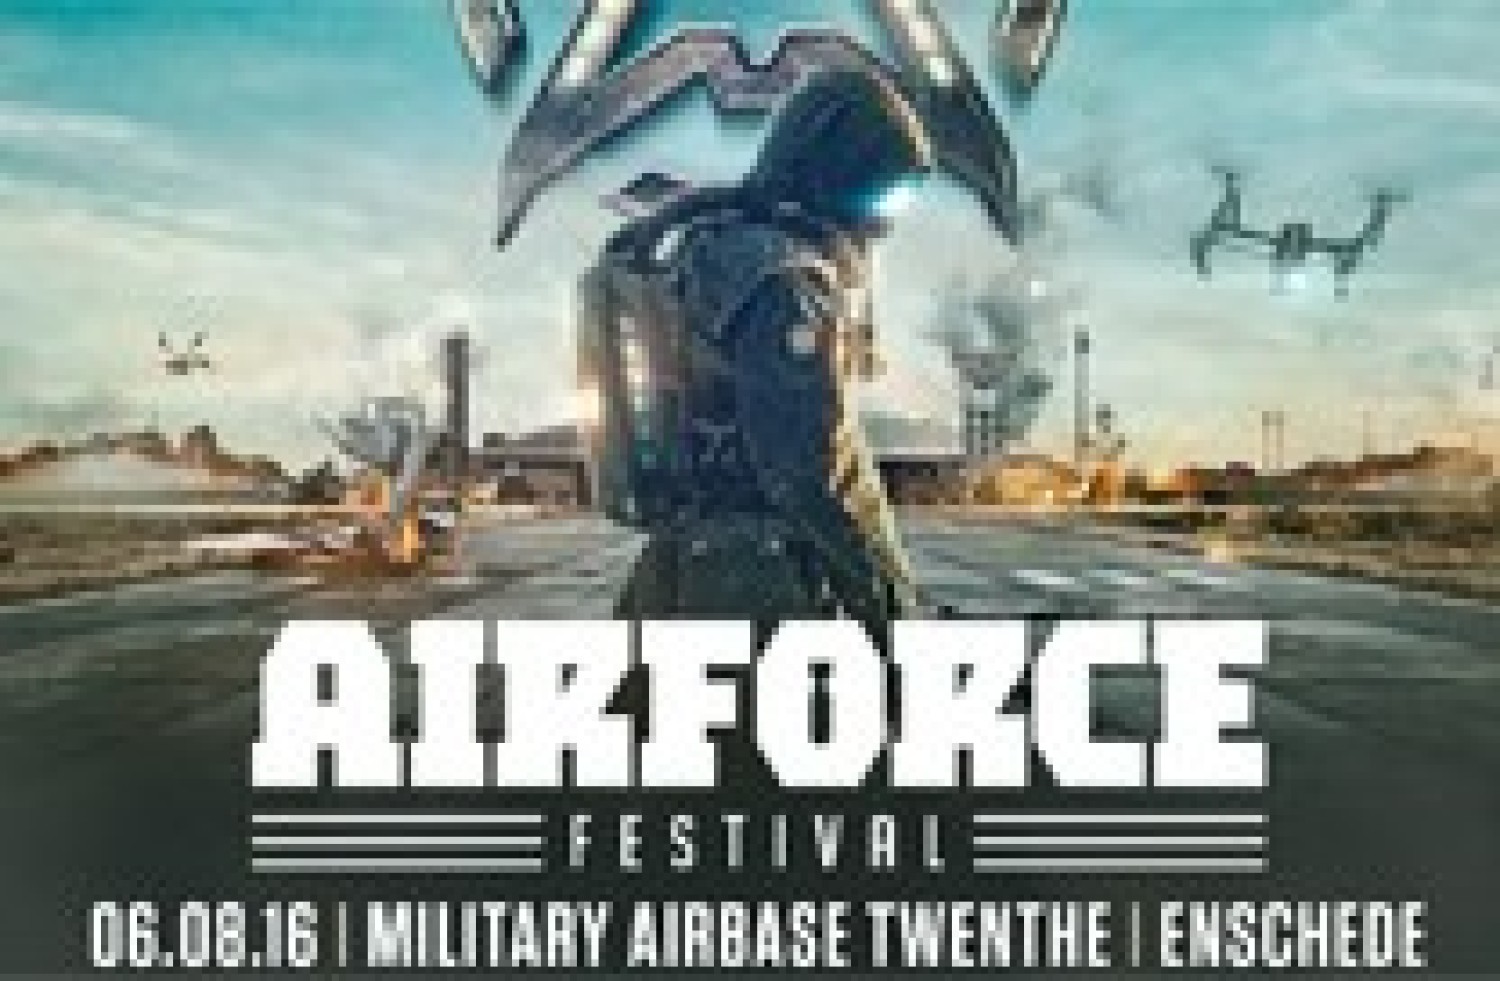 Party nieuws: Airforce festival zaterdag 6 augustus onzeker